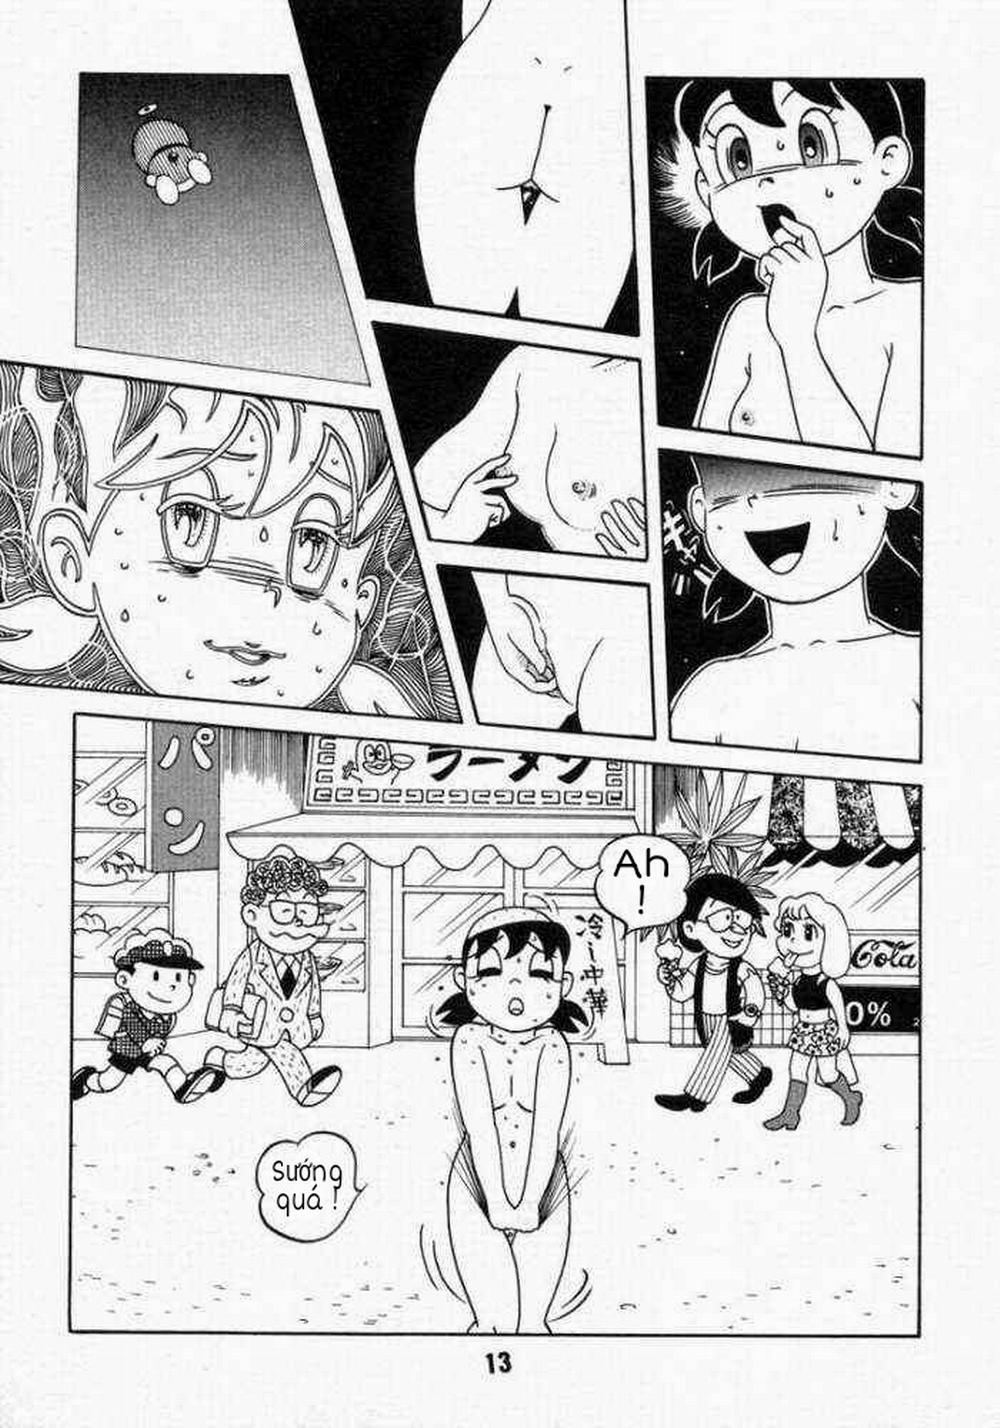 Tuyển Tập Doraemon Doujinshi 18+ Chương 10 Xuka v m t ng h nh Trang 11